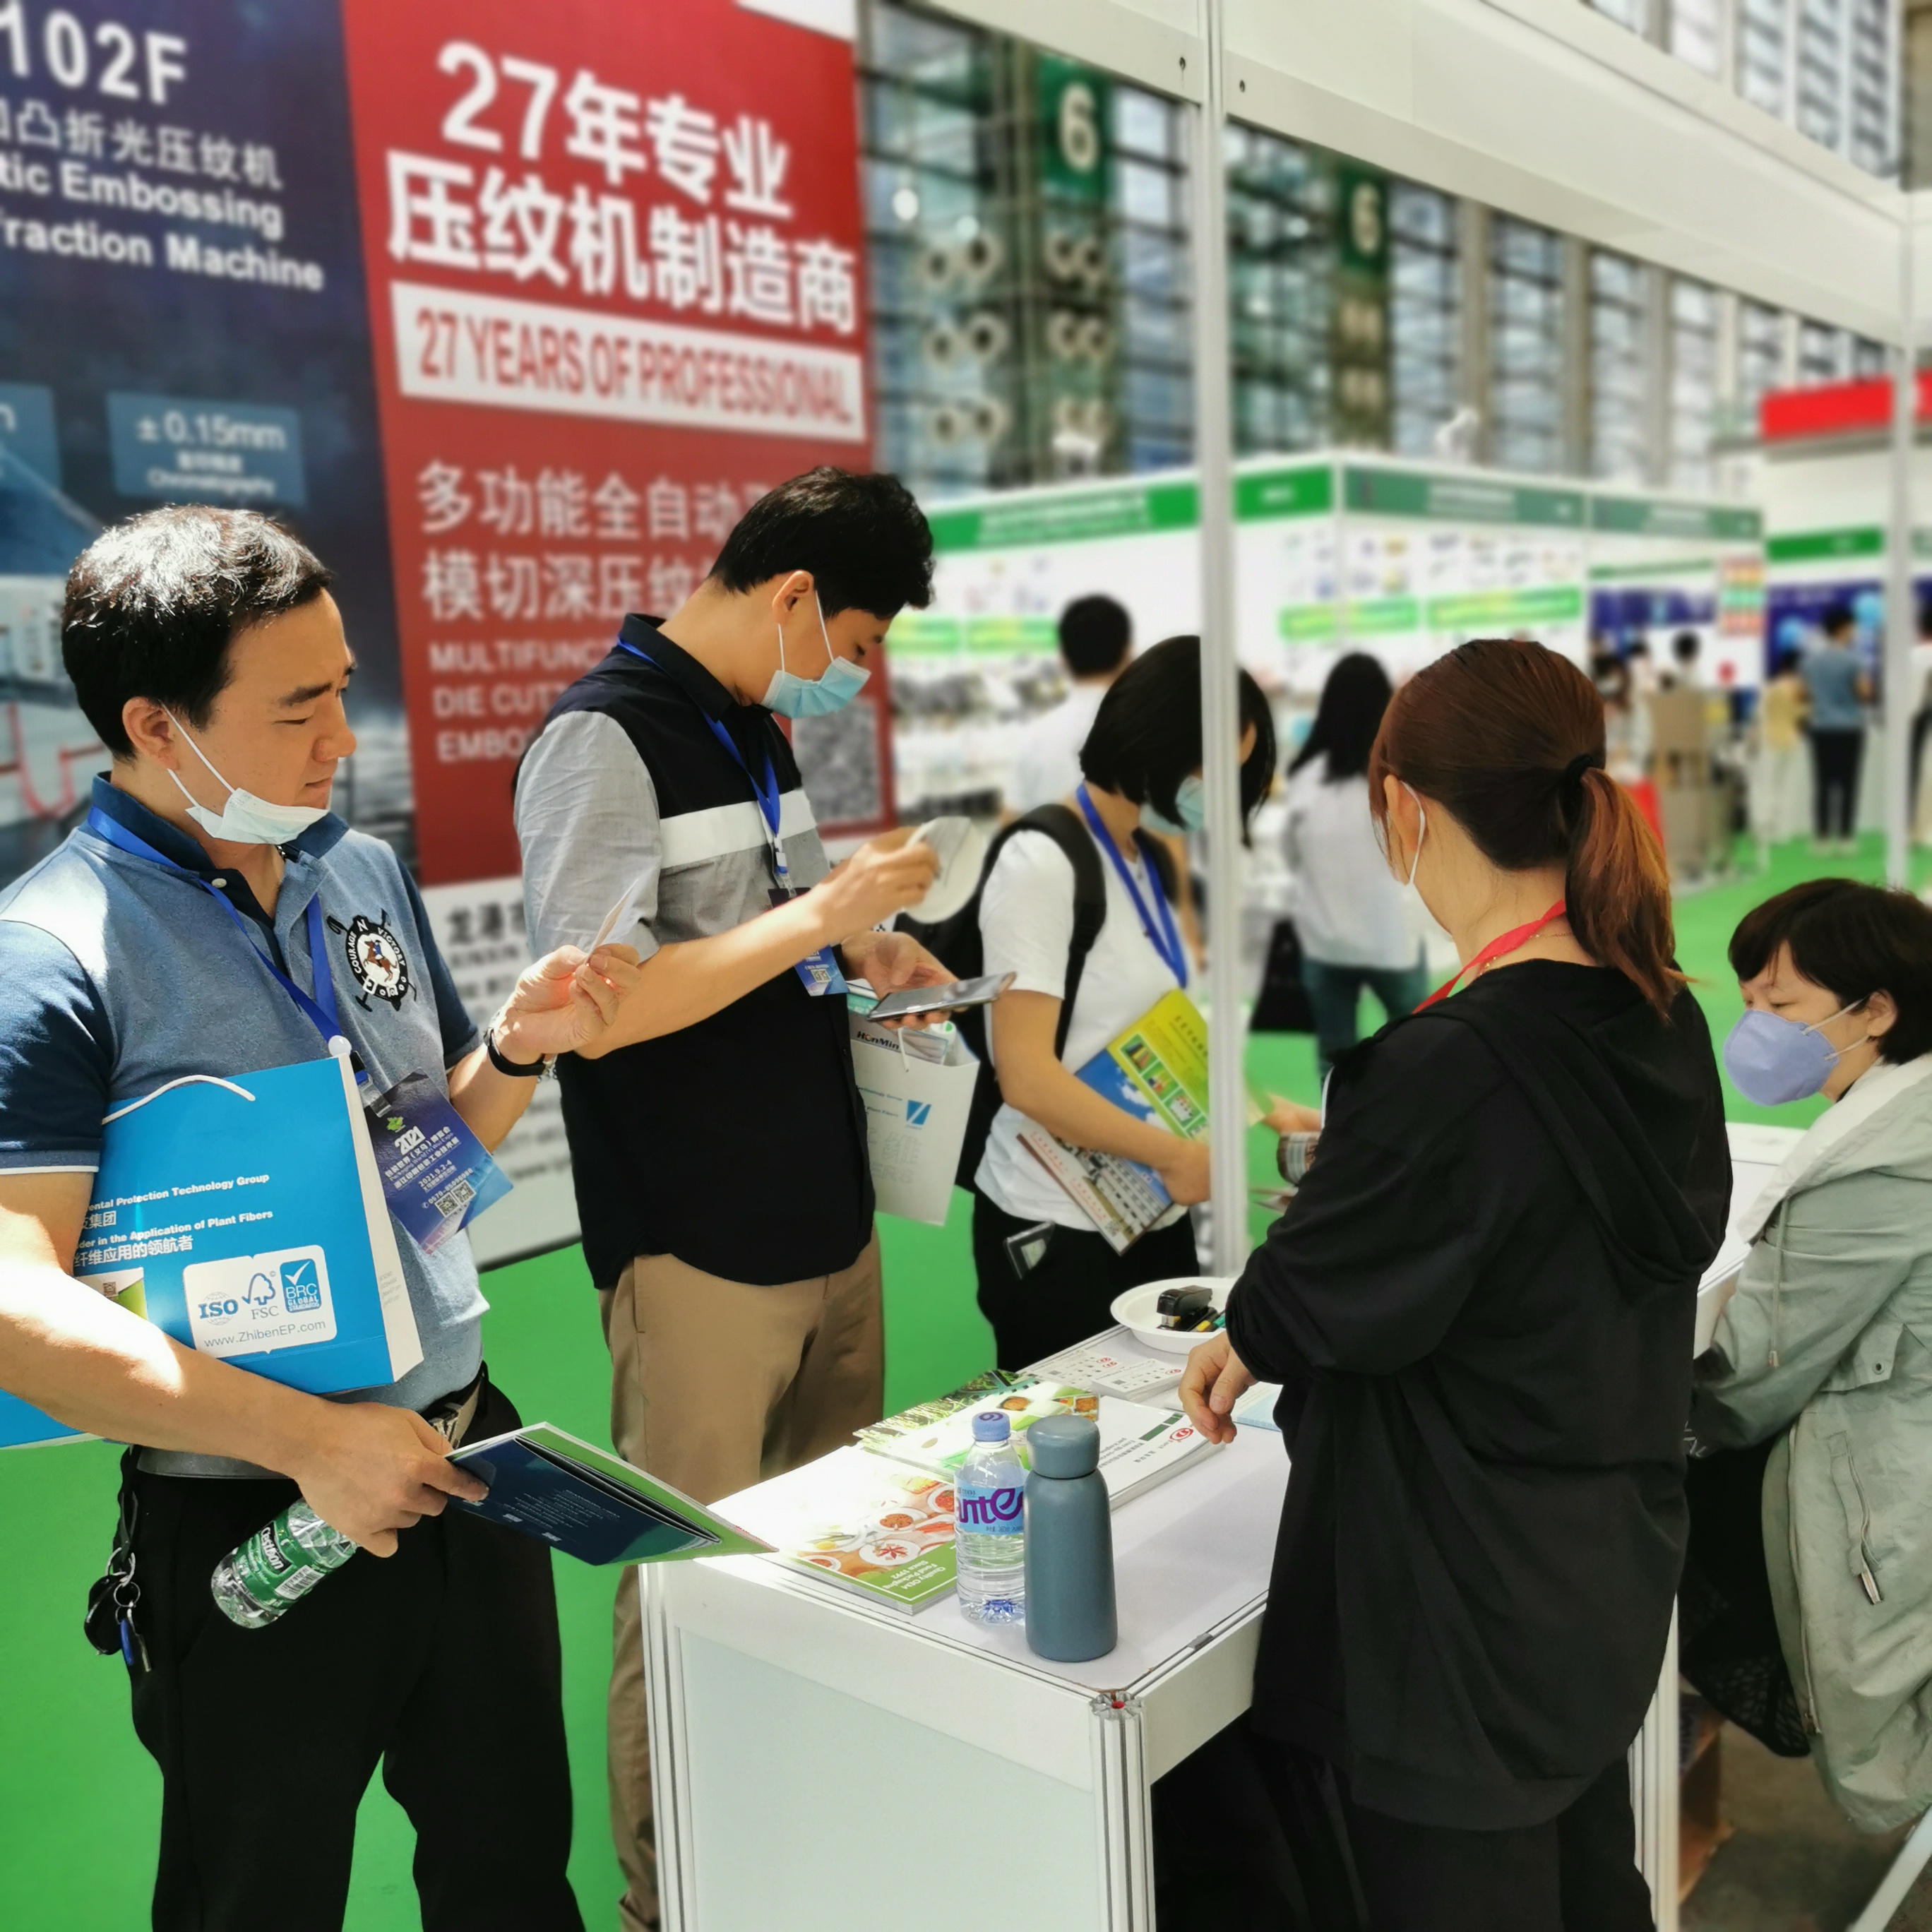 Far East attend Packaging World(Shen Zhen)Expo